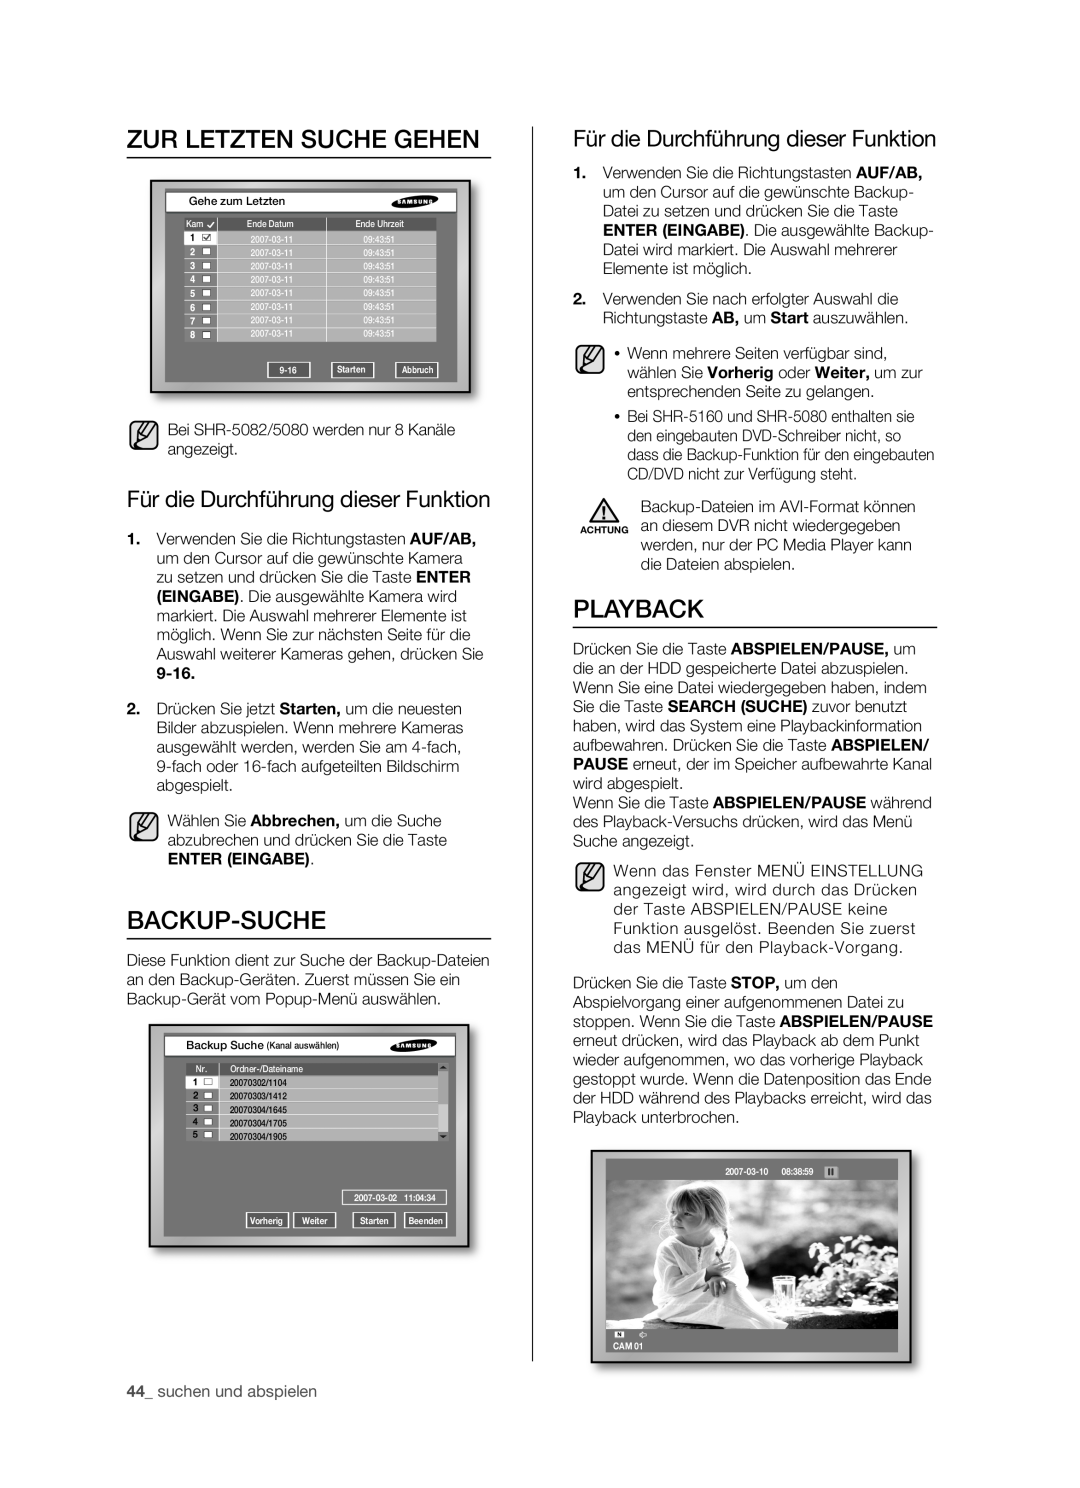 Samsung SHR-5082P/XEG manual Zur Letzten Suche Gehen, Backup-Suche, Playback, Für die Durchführung dieser Funktion, 9-16 